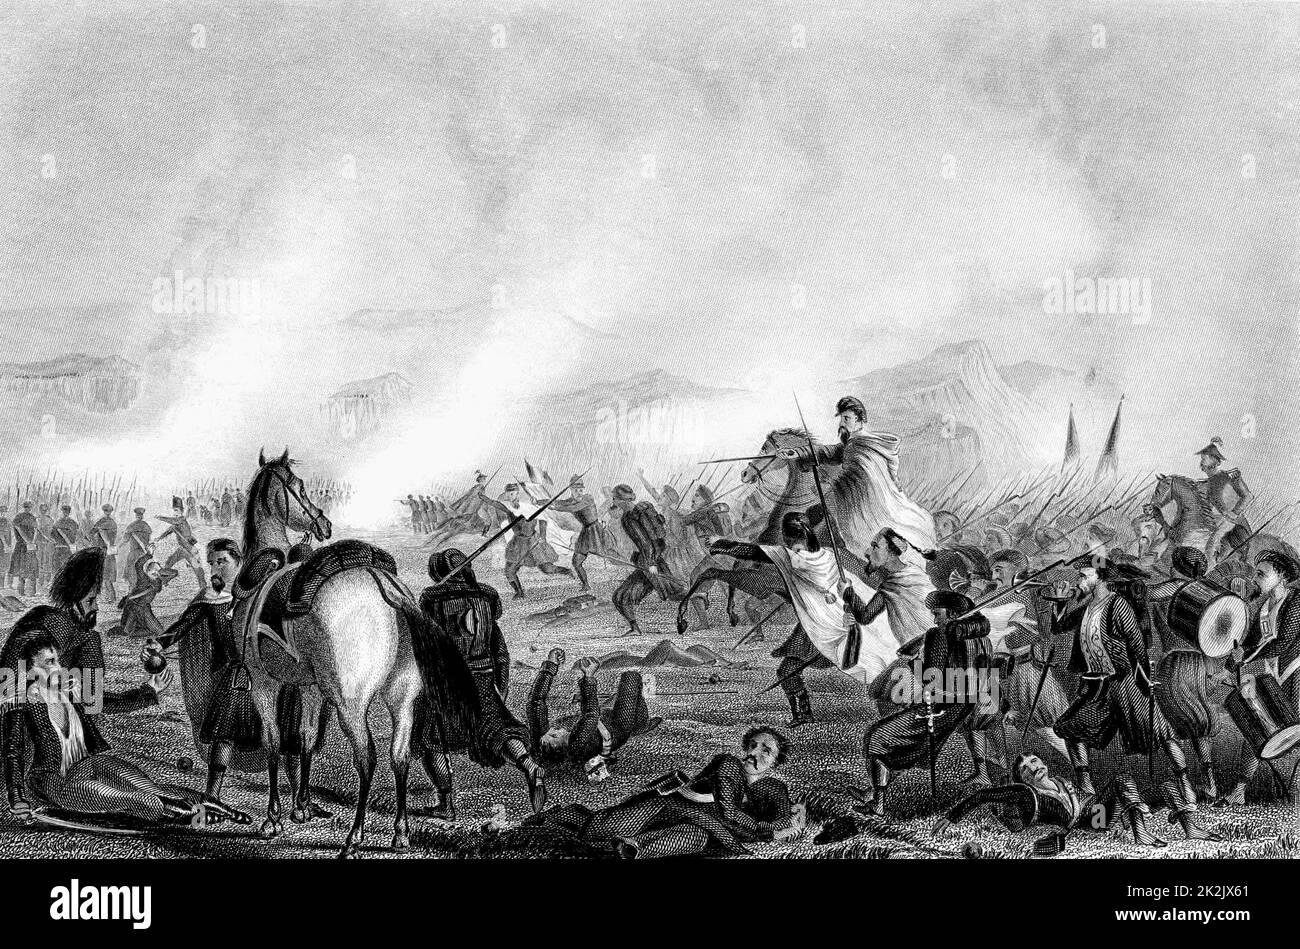 Guerra de Crimea (1853-1856) Zouaves, infantería francesa de origen argelino, acudiendo a la ayuda de las tropas británicas, ayudándoles a rechazar el ataque ruso en Inkerman el 5 de noviembre de 1854. Grabado c1856 Foto de stock